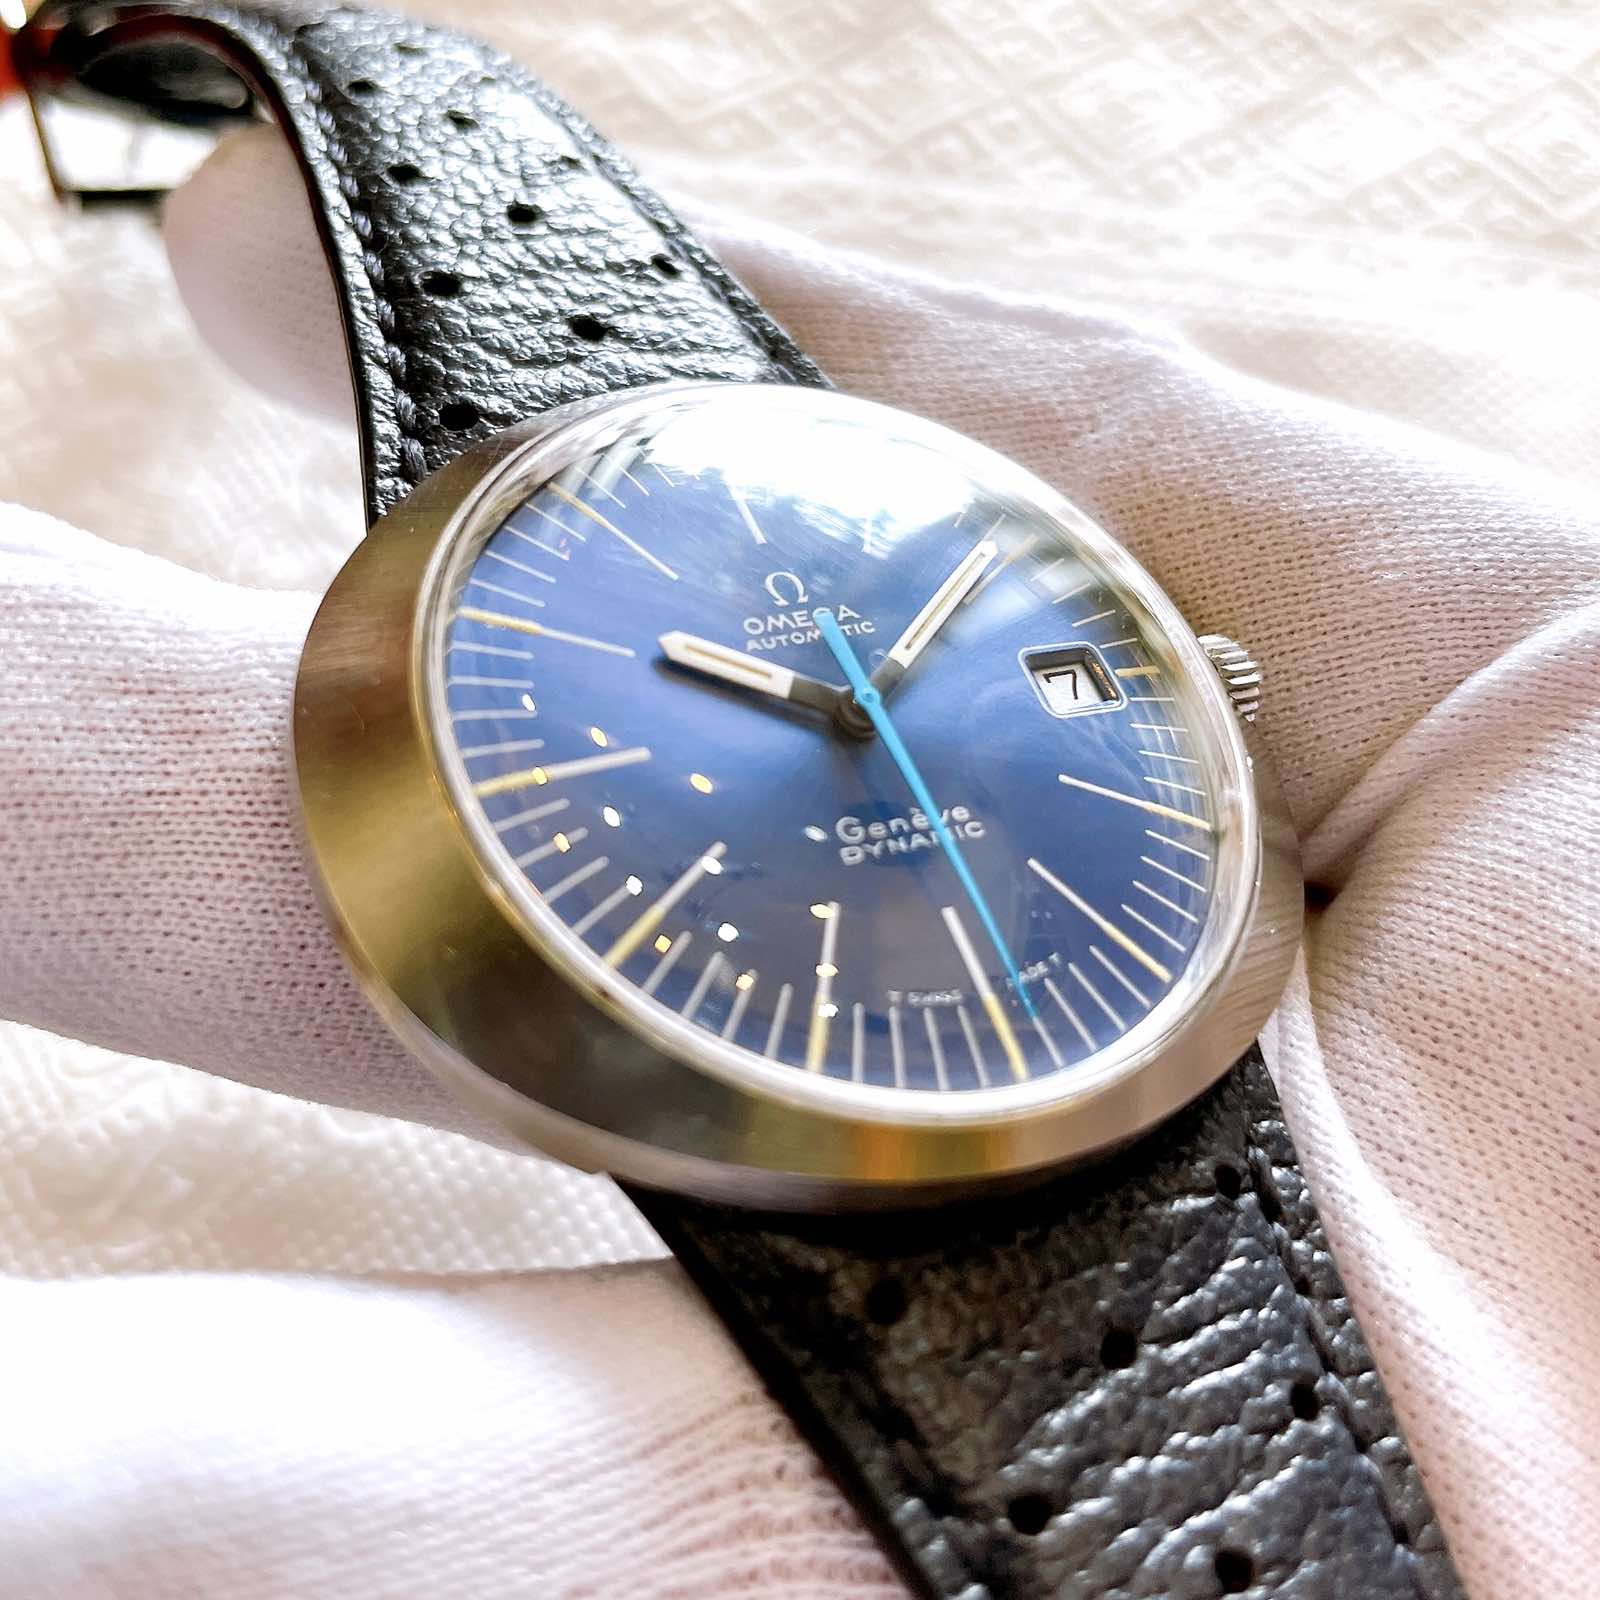 Đồng hồ cổ Omega GENEVE Automatic đĩa bay chính hãng Thụy Sĩ